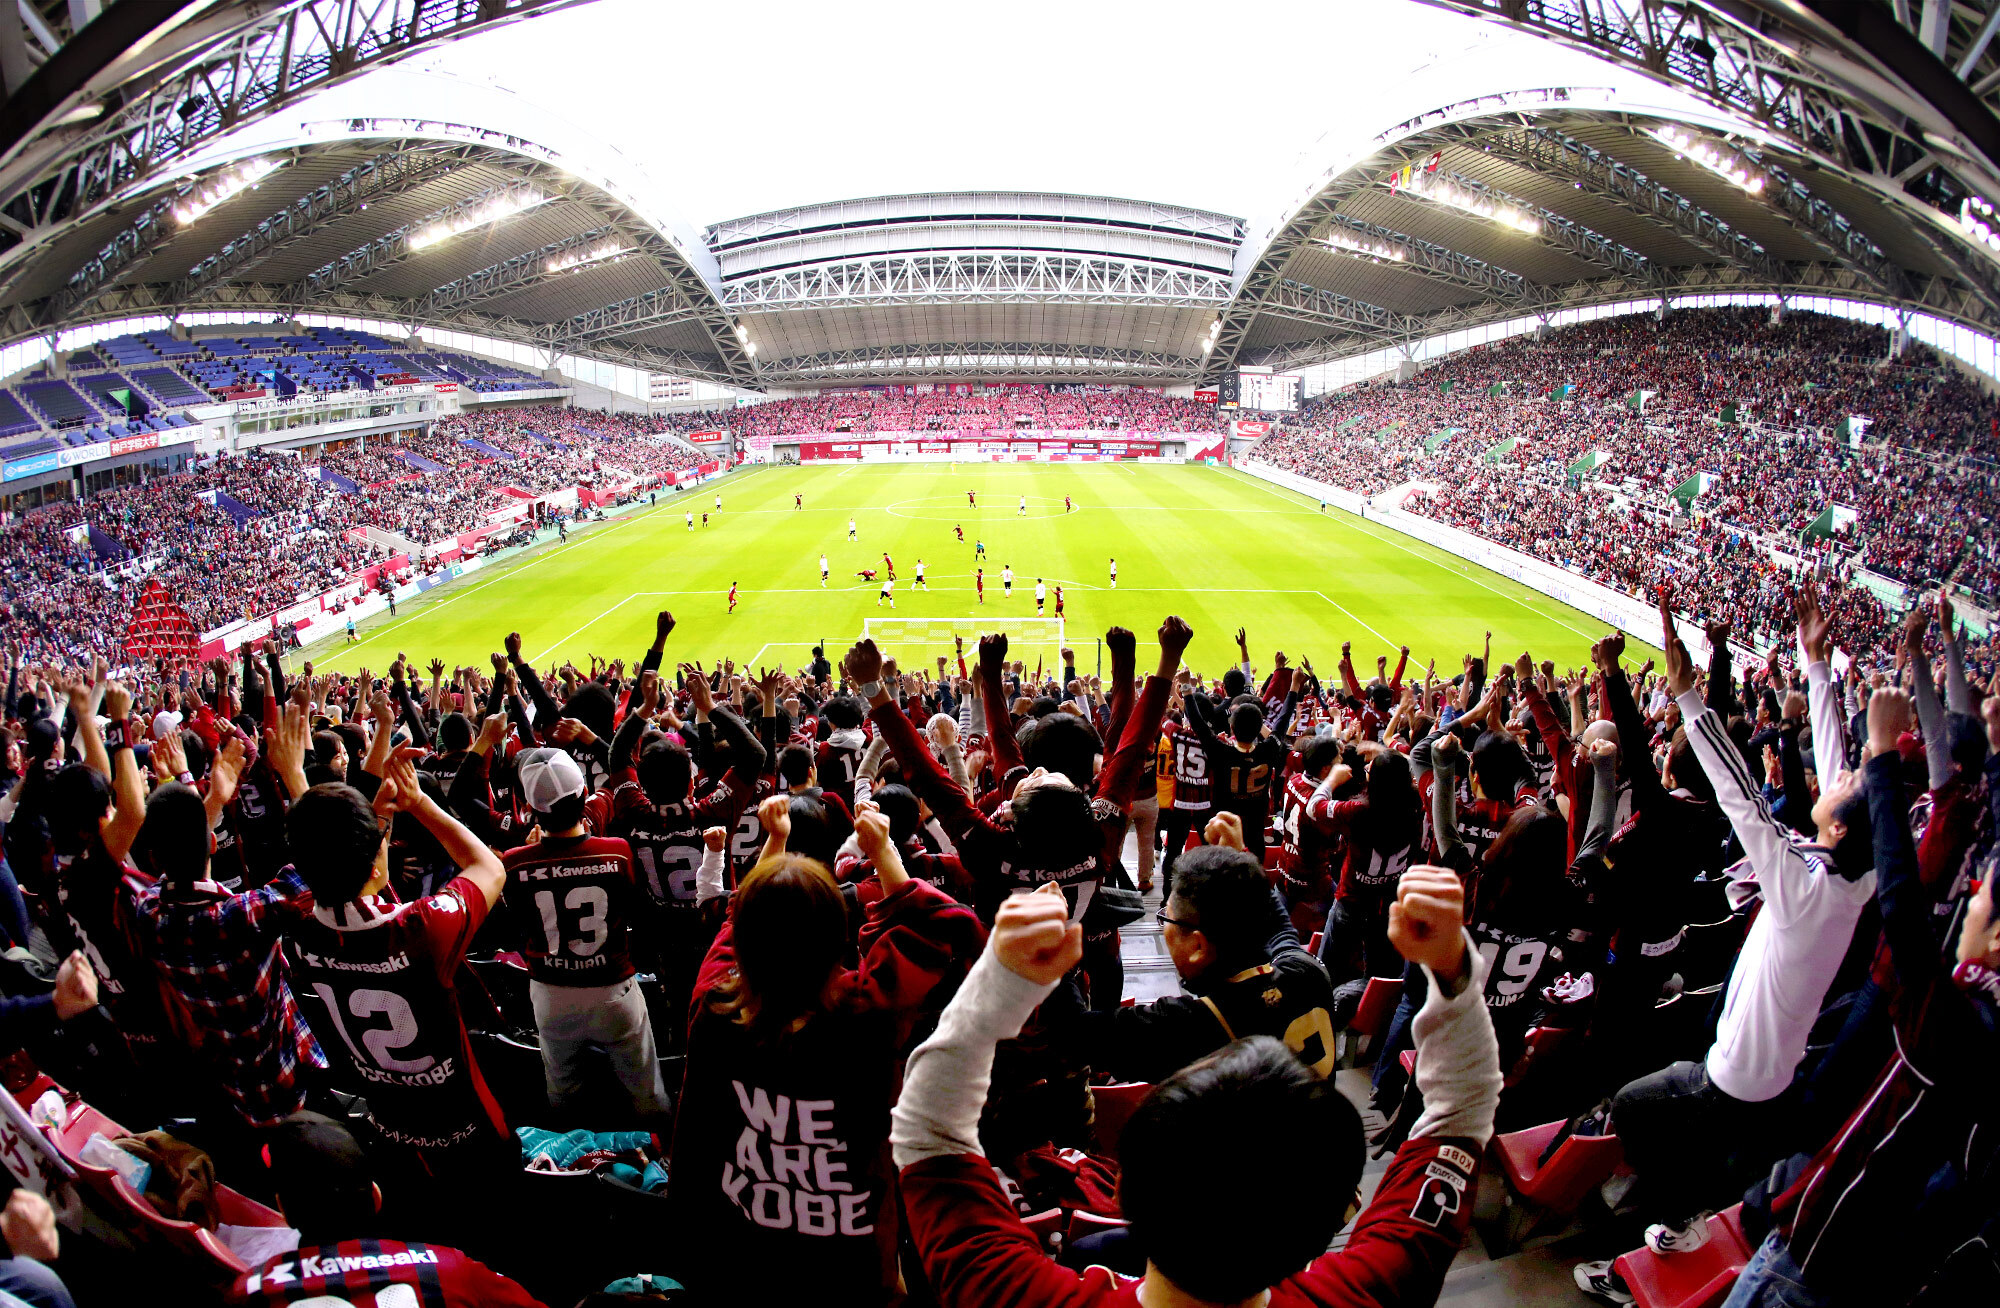 ノエビアスタジアム神戸 命名権契約更新 スポーツを通して 夢や感動をお届けするサポートをします 株式会社ノエビアのプレスリリース